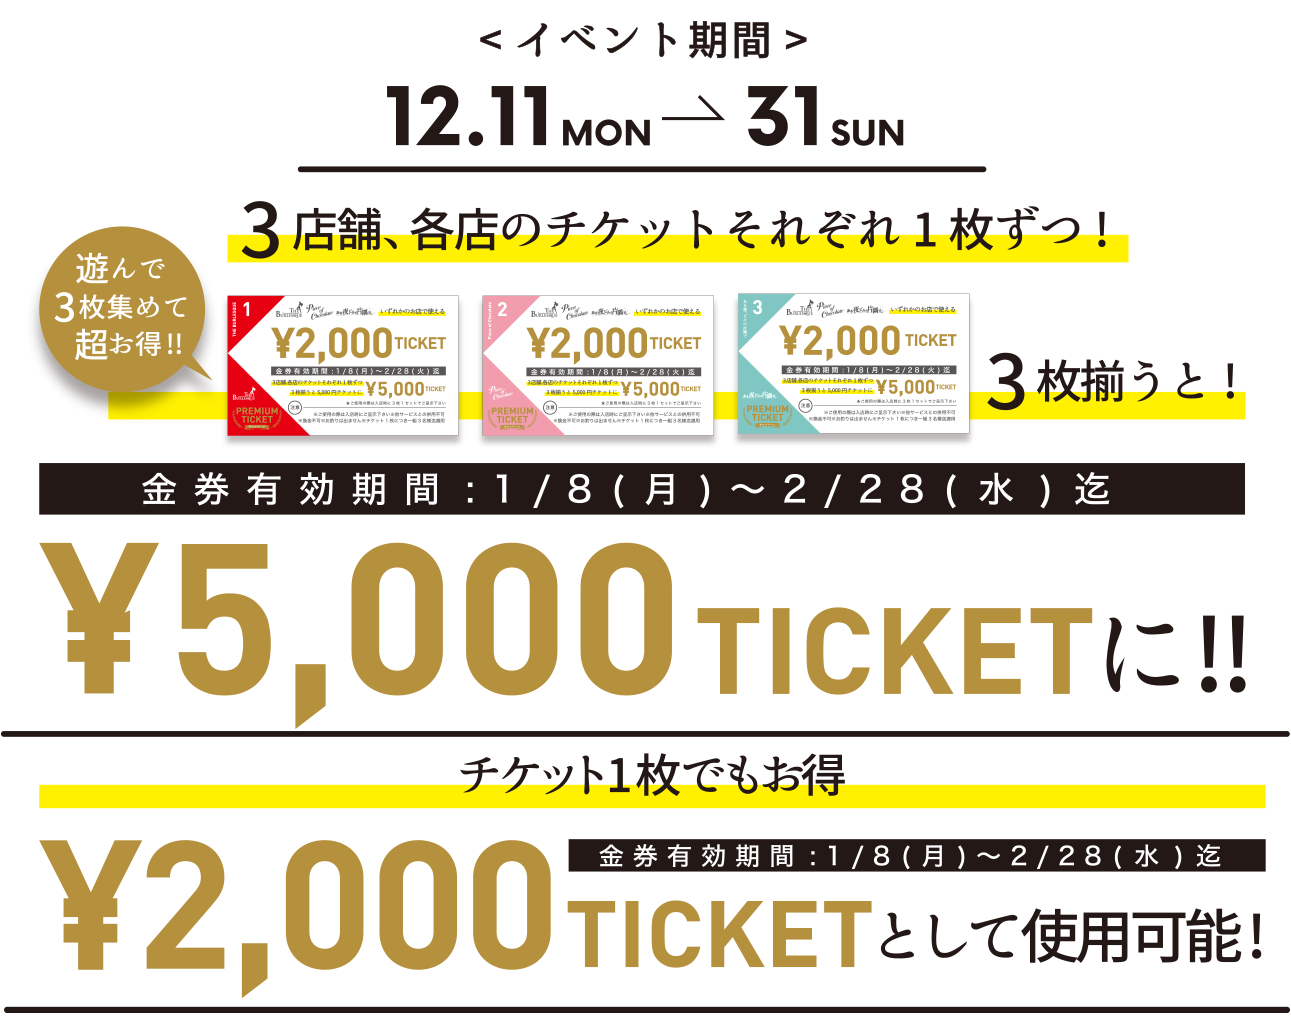 イベント期間：12.11〜31 チケット３枚揃えると5,000円OFF！